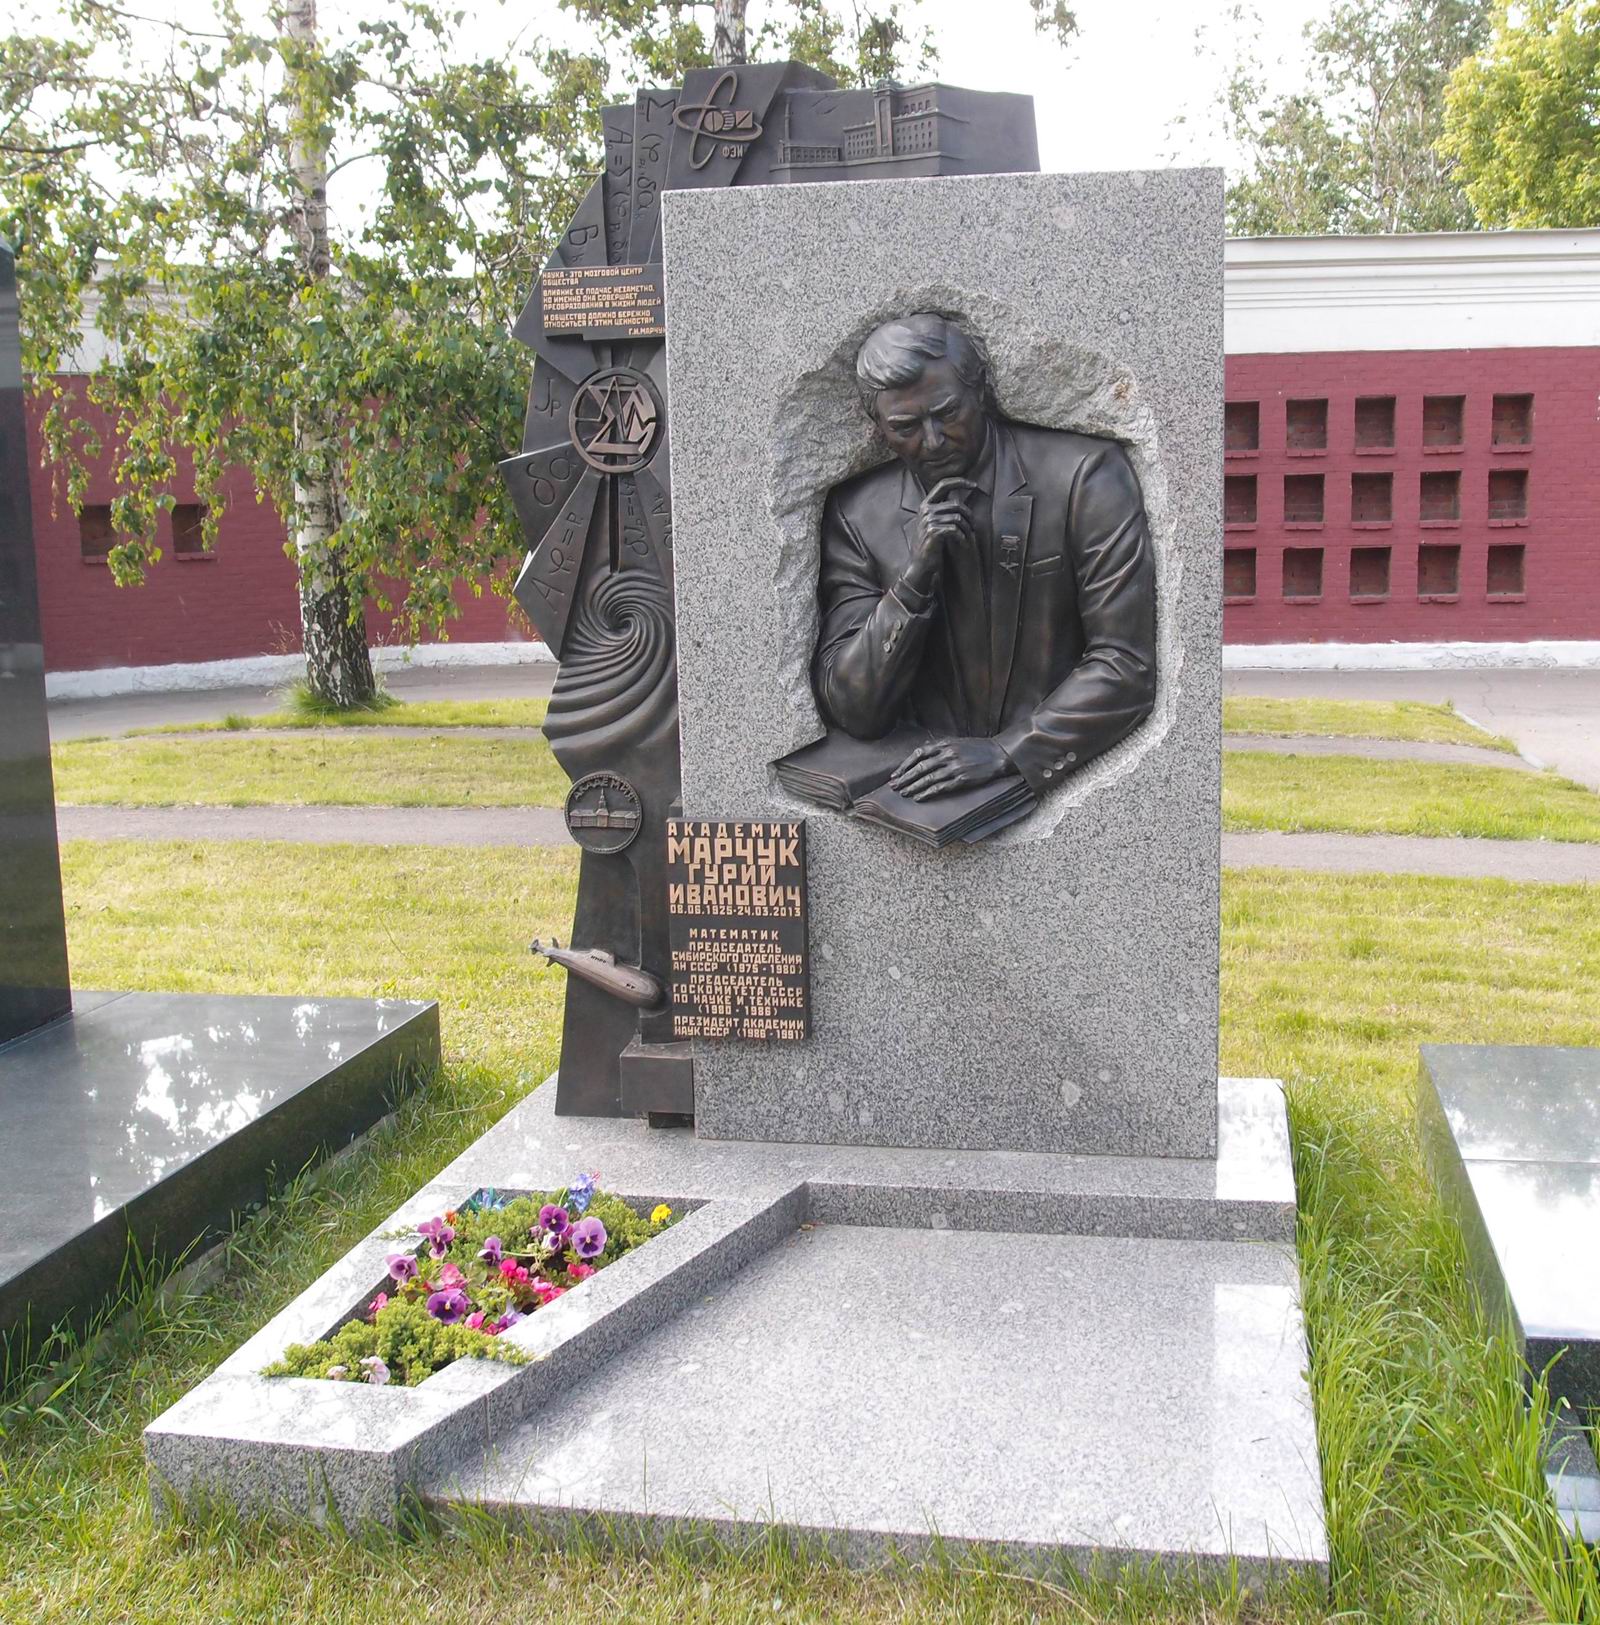 Памятник на могиле Марчука Г.И. (1925-2013), на Новодевичьем кладбище (11-7-2). Нажмите левую кнопку мыши чтобы увидеть фрагмент памятника.